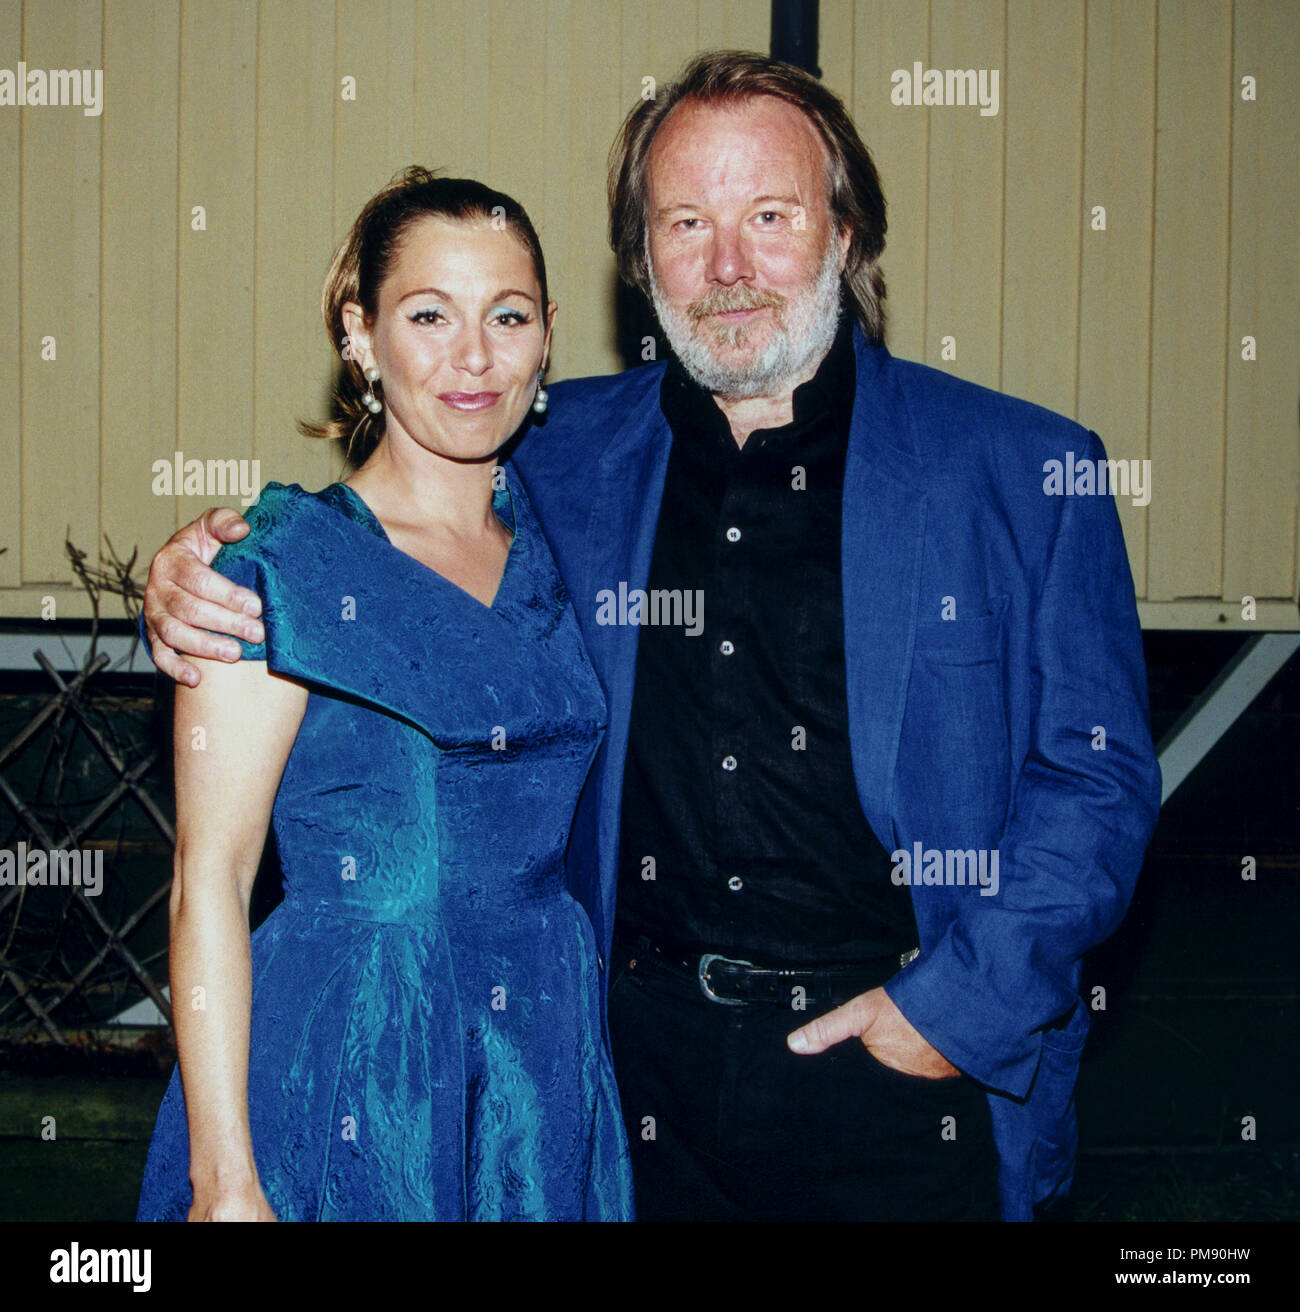 BENNY ANDERSSON Komponist und Mitglied von ABBA, auf das Bild zusammen mit Helen Sjöholm nach einem Konzert mit BAO Benny Andersson Orchester 2005 Stockfoto